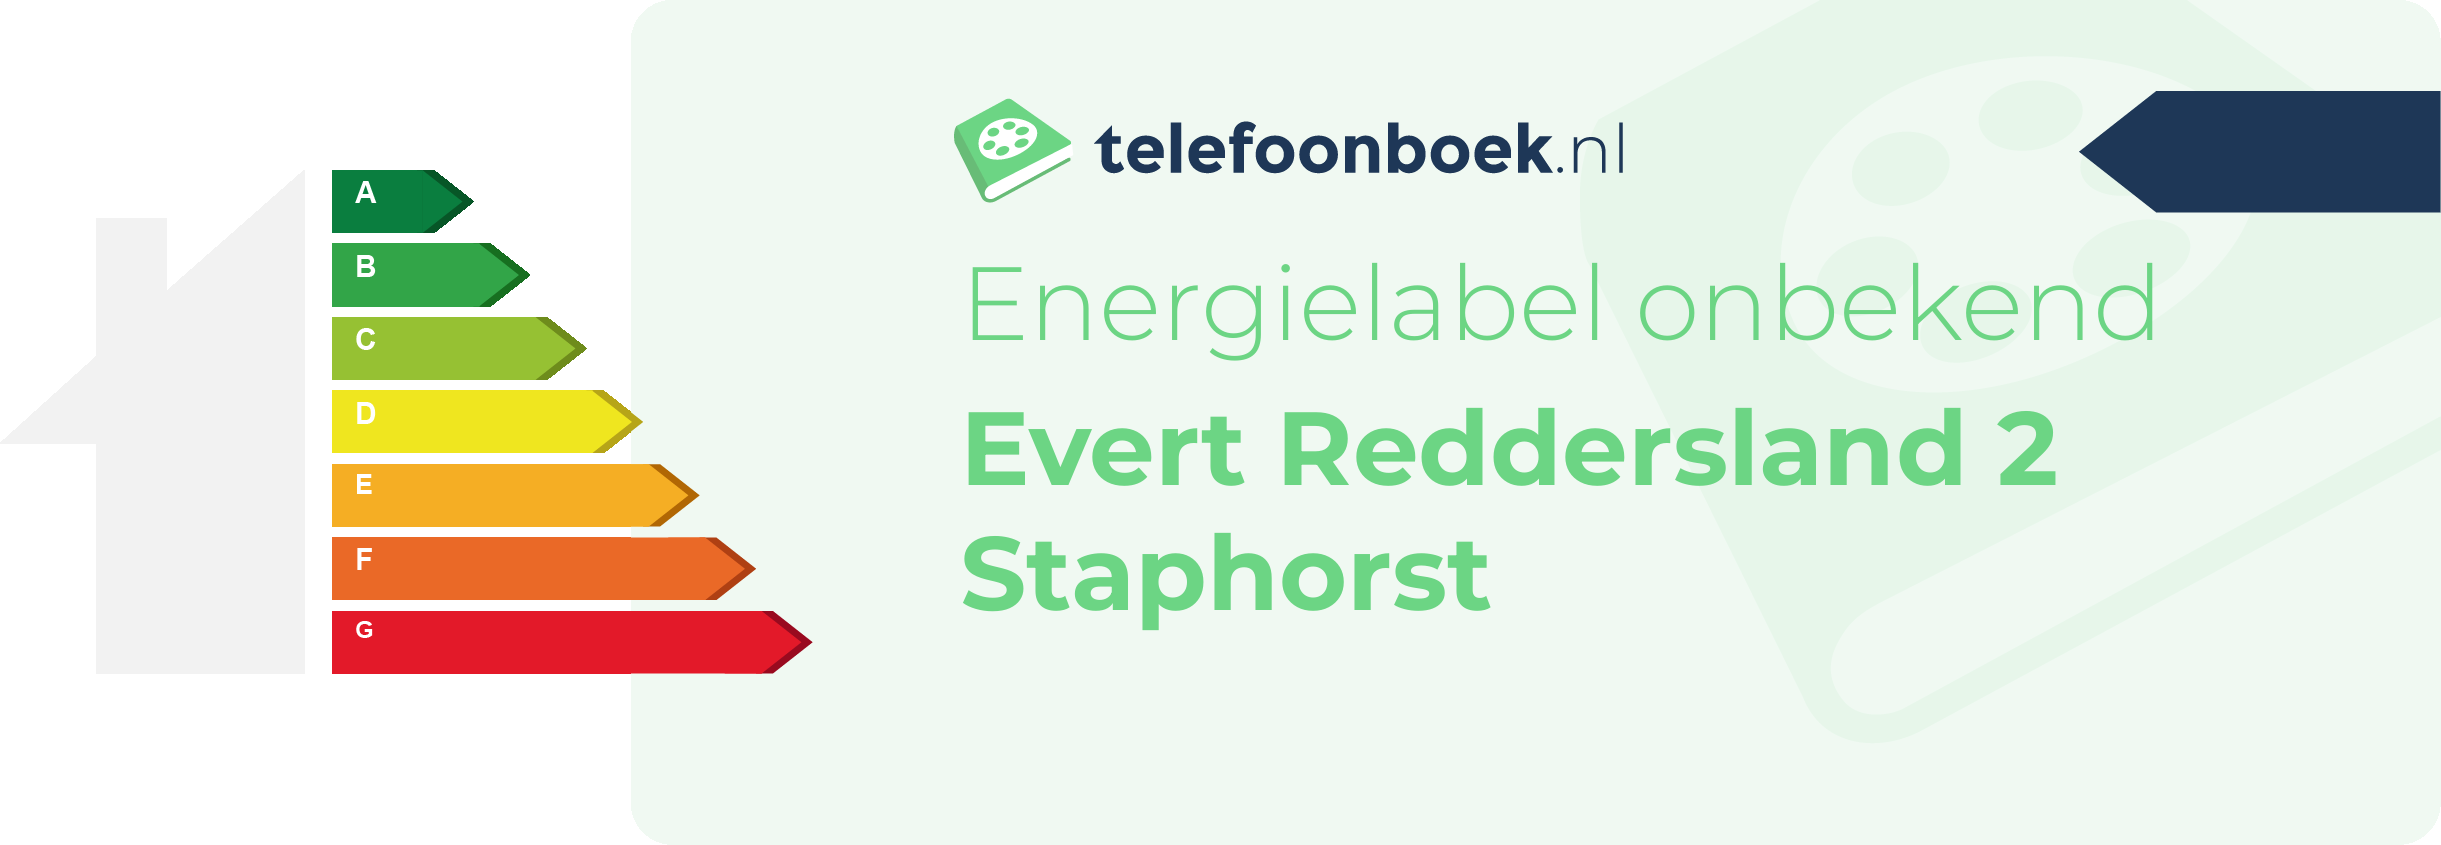 Energielabel Evert Reddersland 2 Staphorst